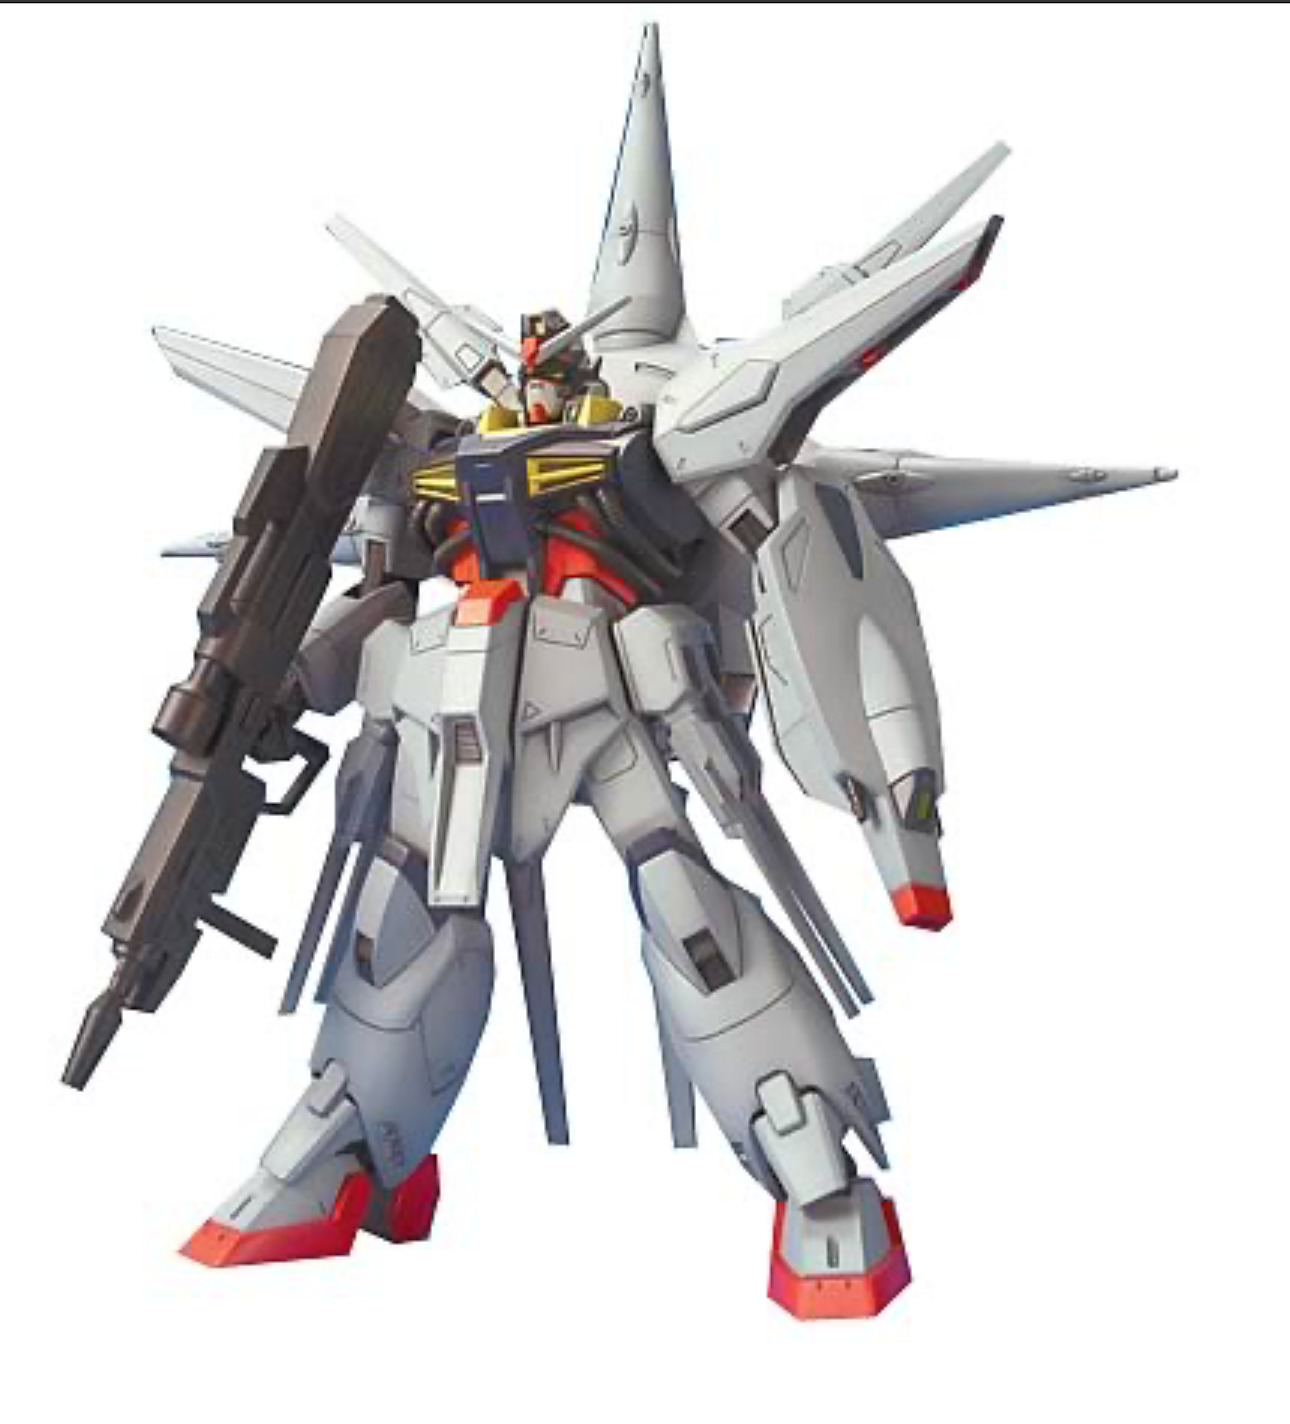 Gundam • Gundam Seed PROVIDENCE Gundam HG 1:144 Scale Kit • BANDAI • Ships Free